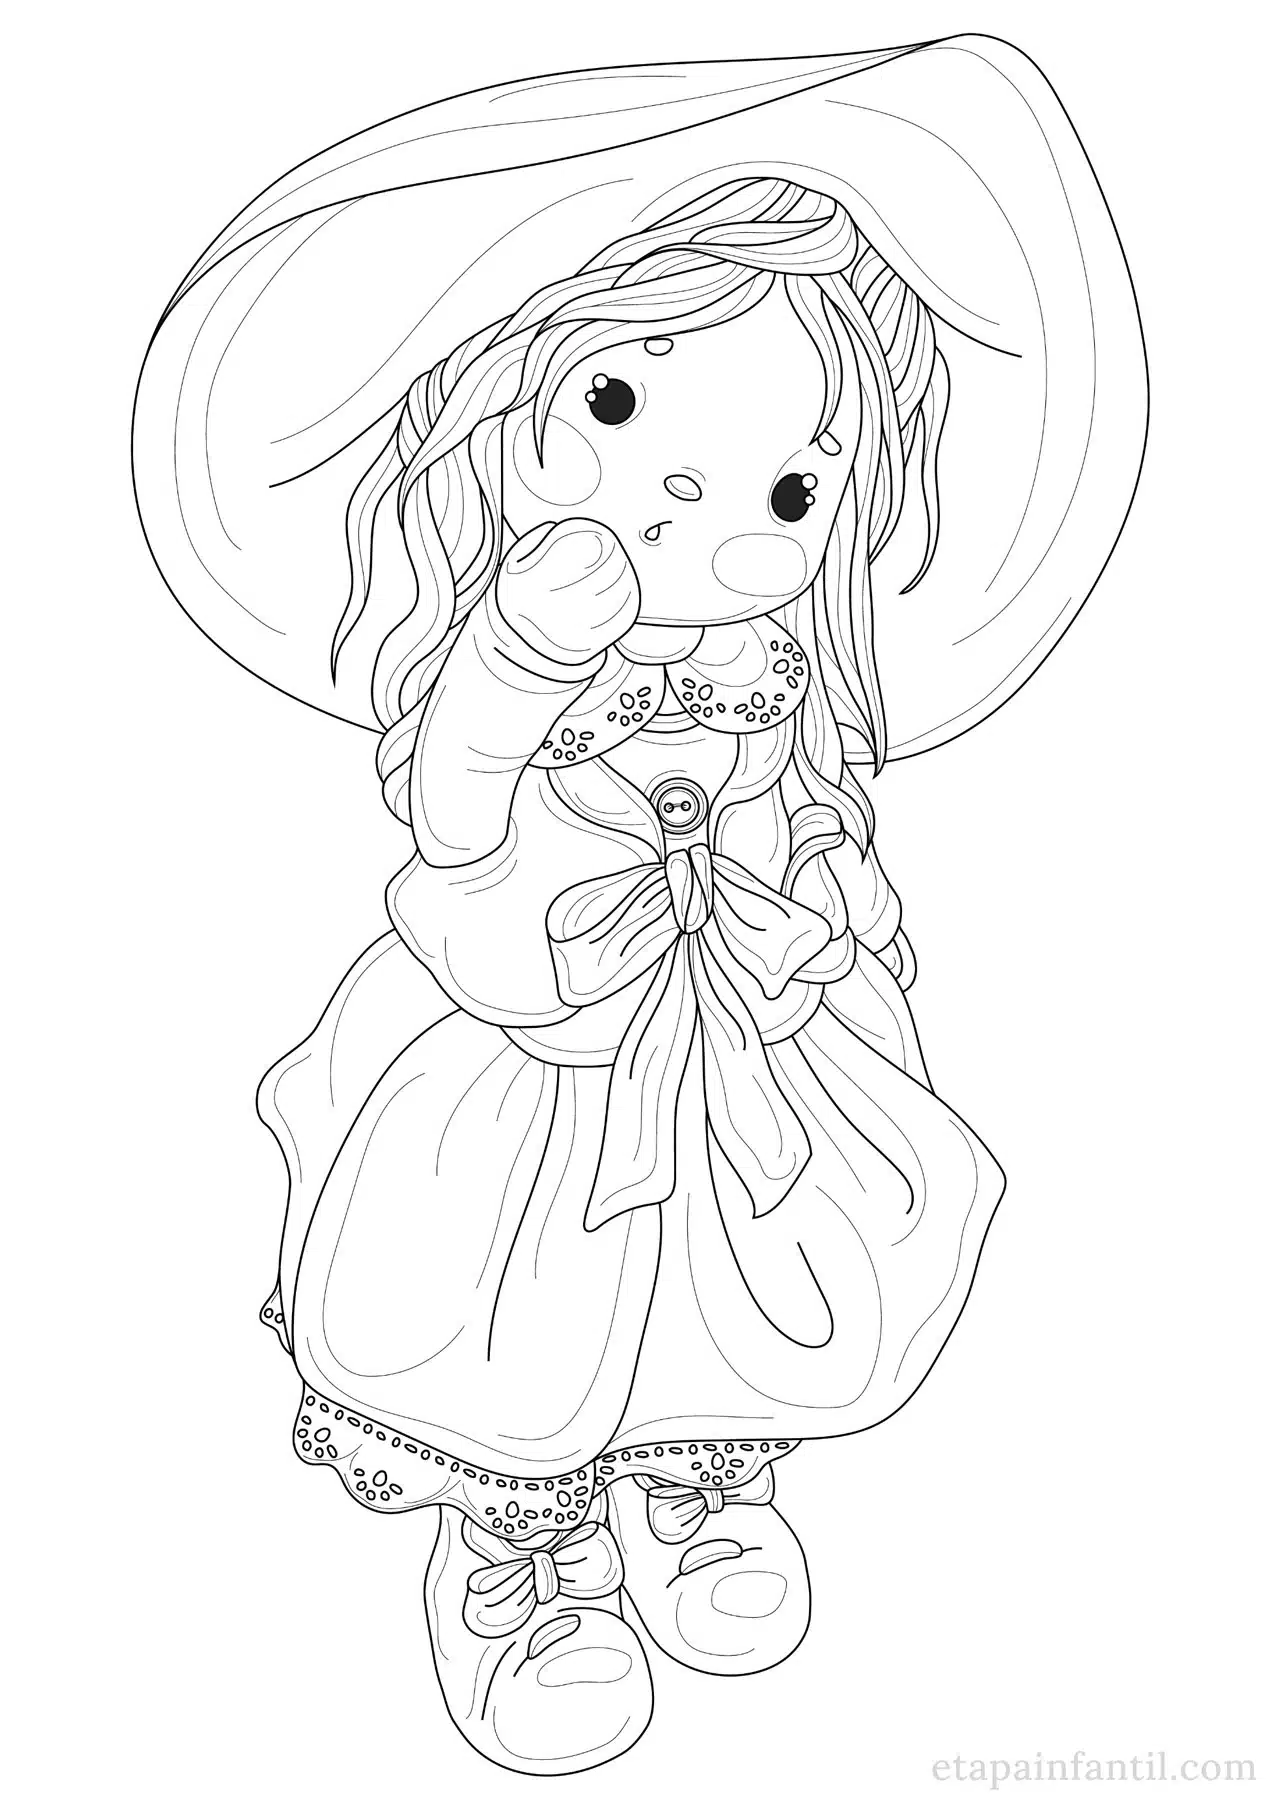 Dibujo para colorear de Muñeca con sombrero